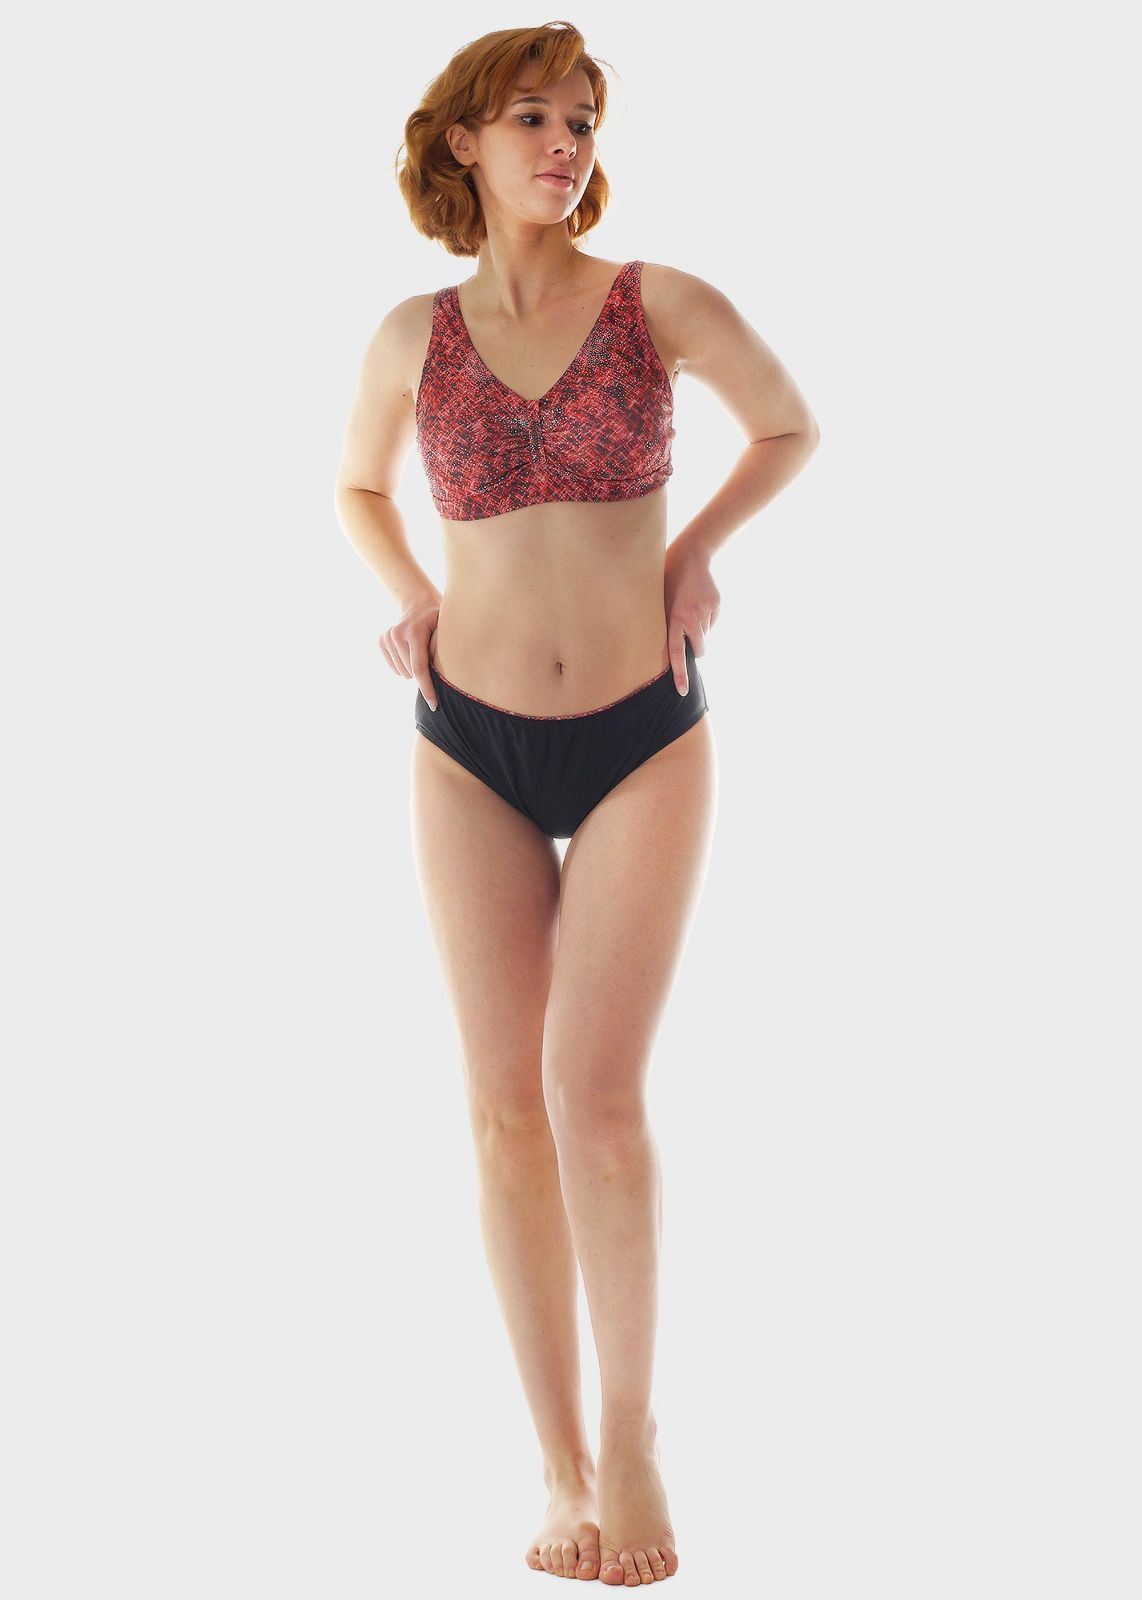 Γυναικείο σετ μαγιό bikini all print bra αποσπώμενη επένδυση slip κανονική γραμμή.Καλύπτει D Cup ΚΟΚΚΙΝΟ